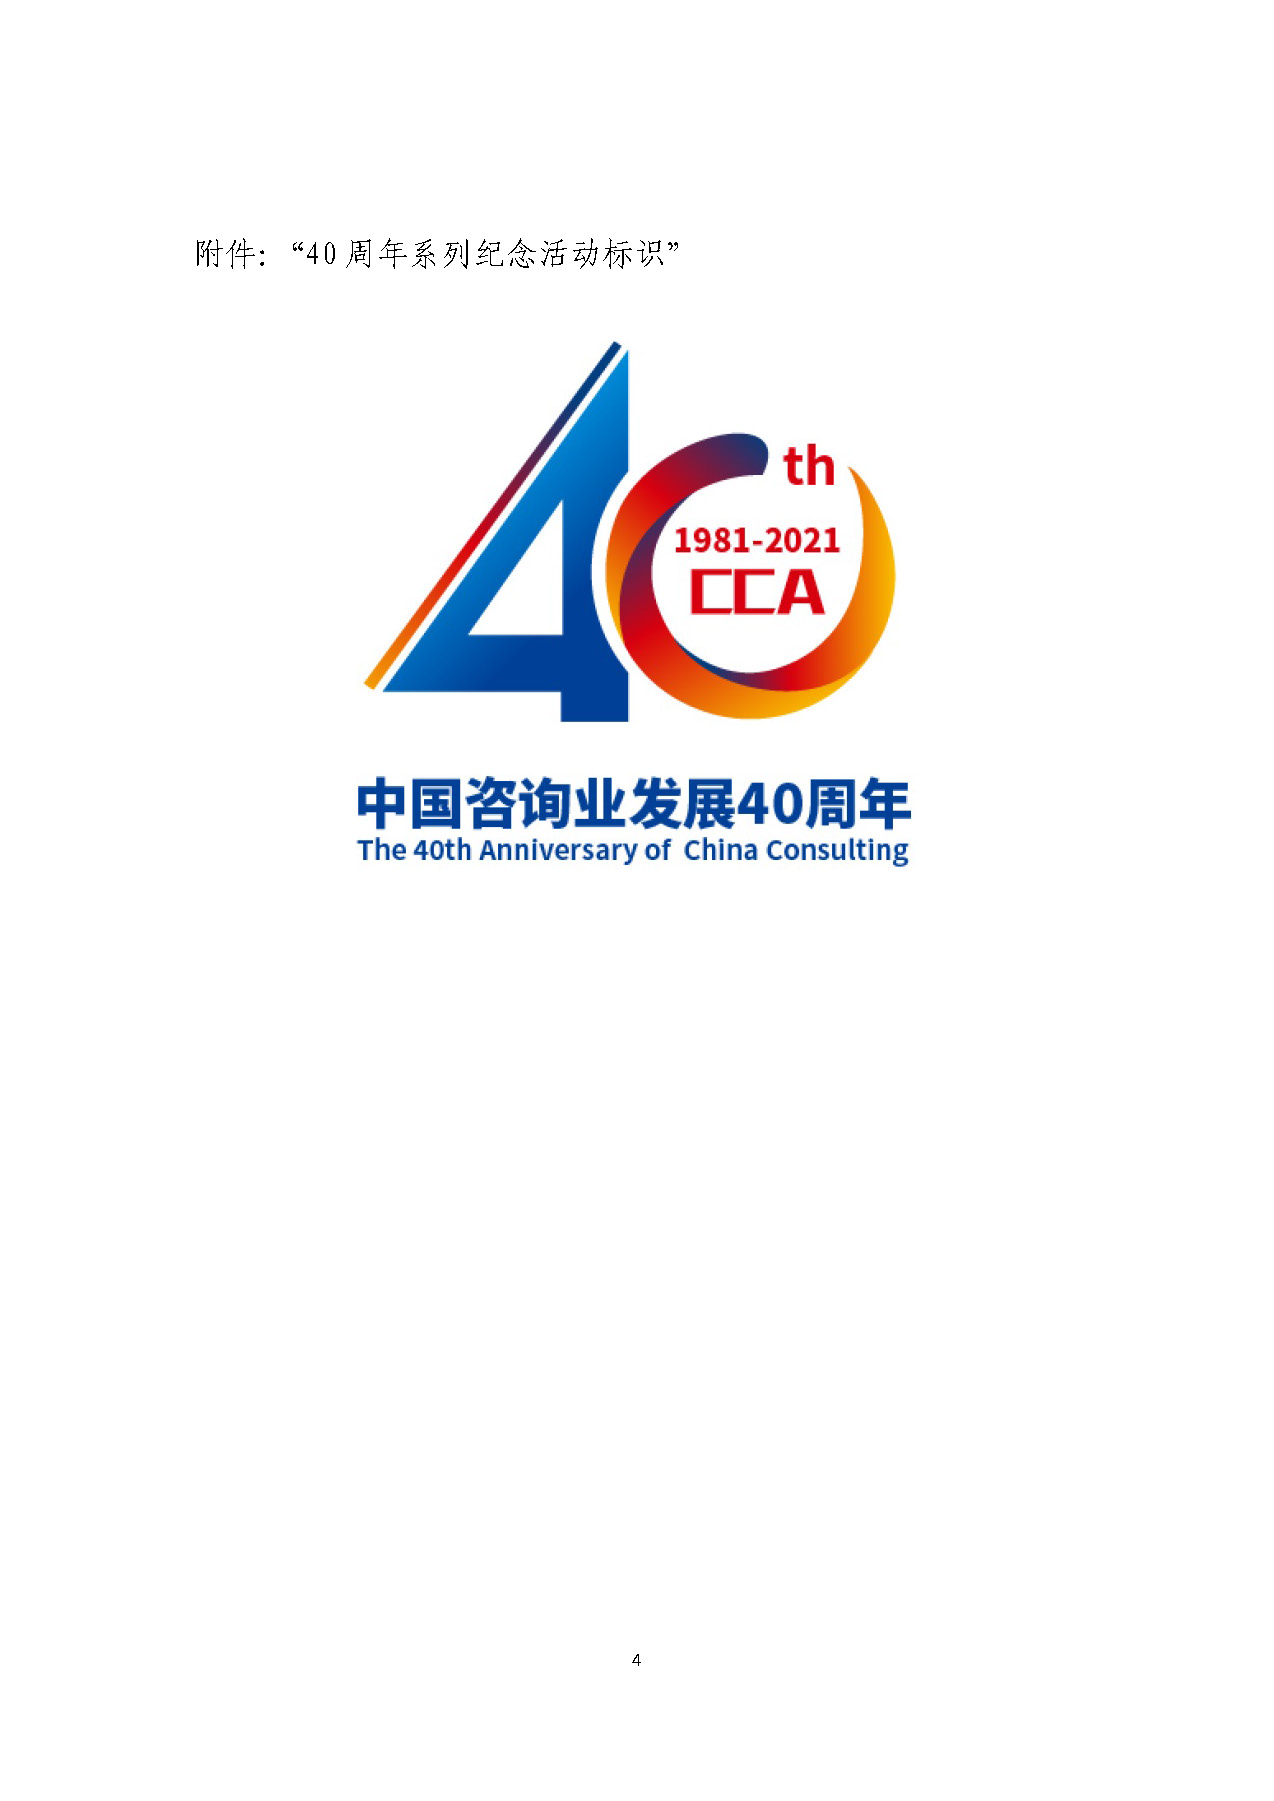 中国咨询业40周年系列活动通知_页面_1_页面_4.jpg